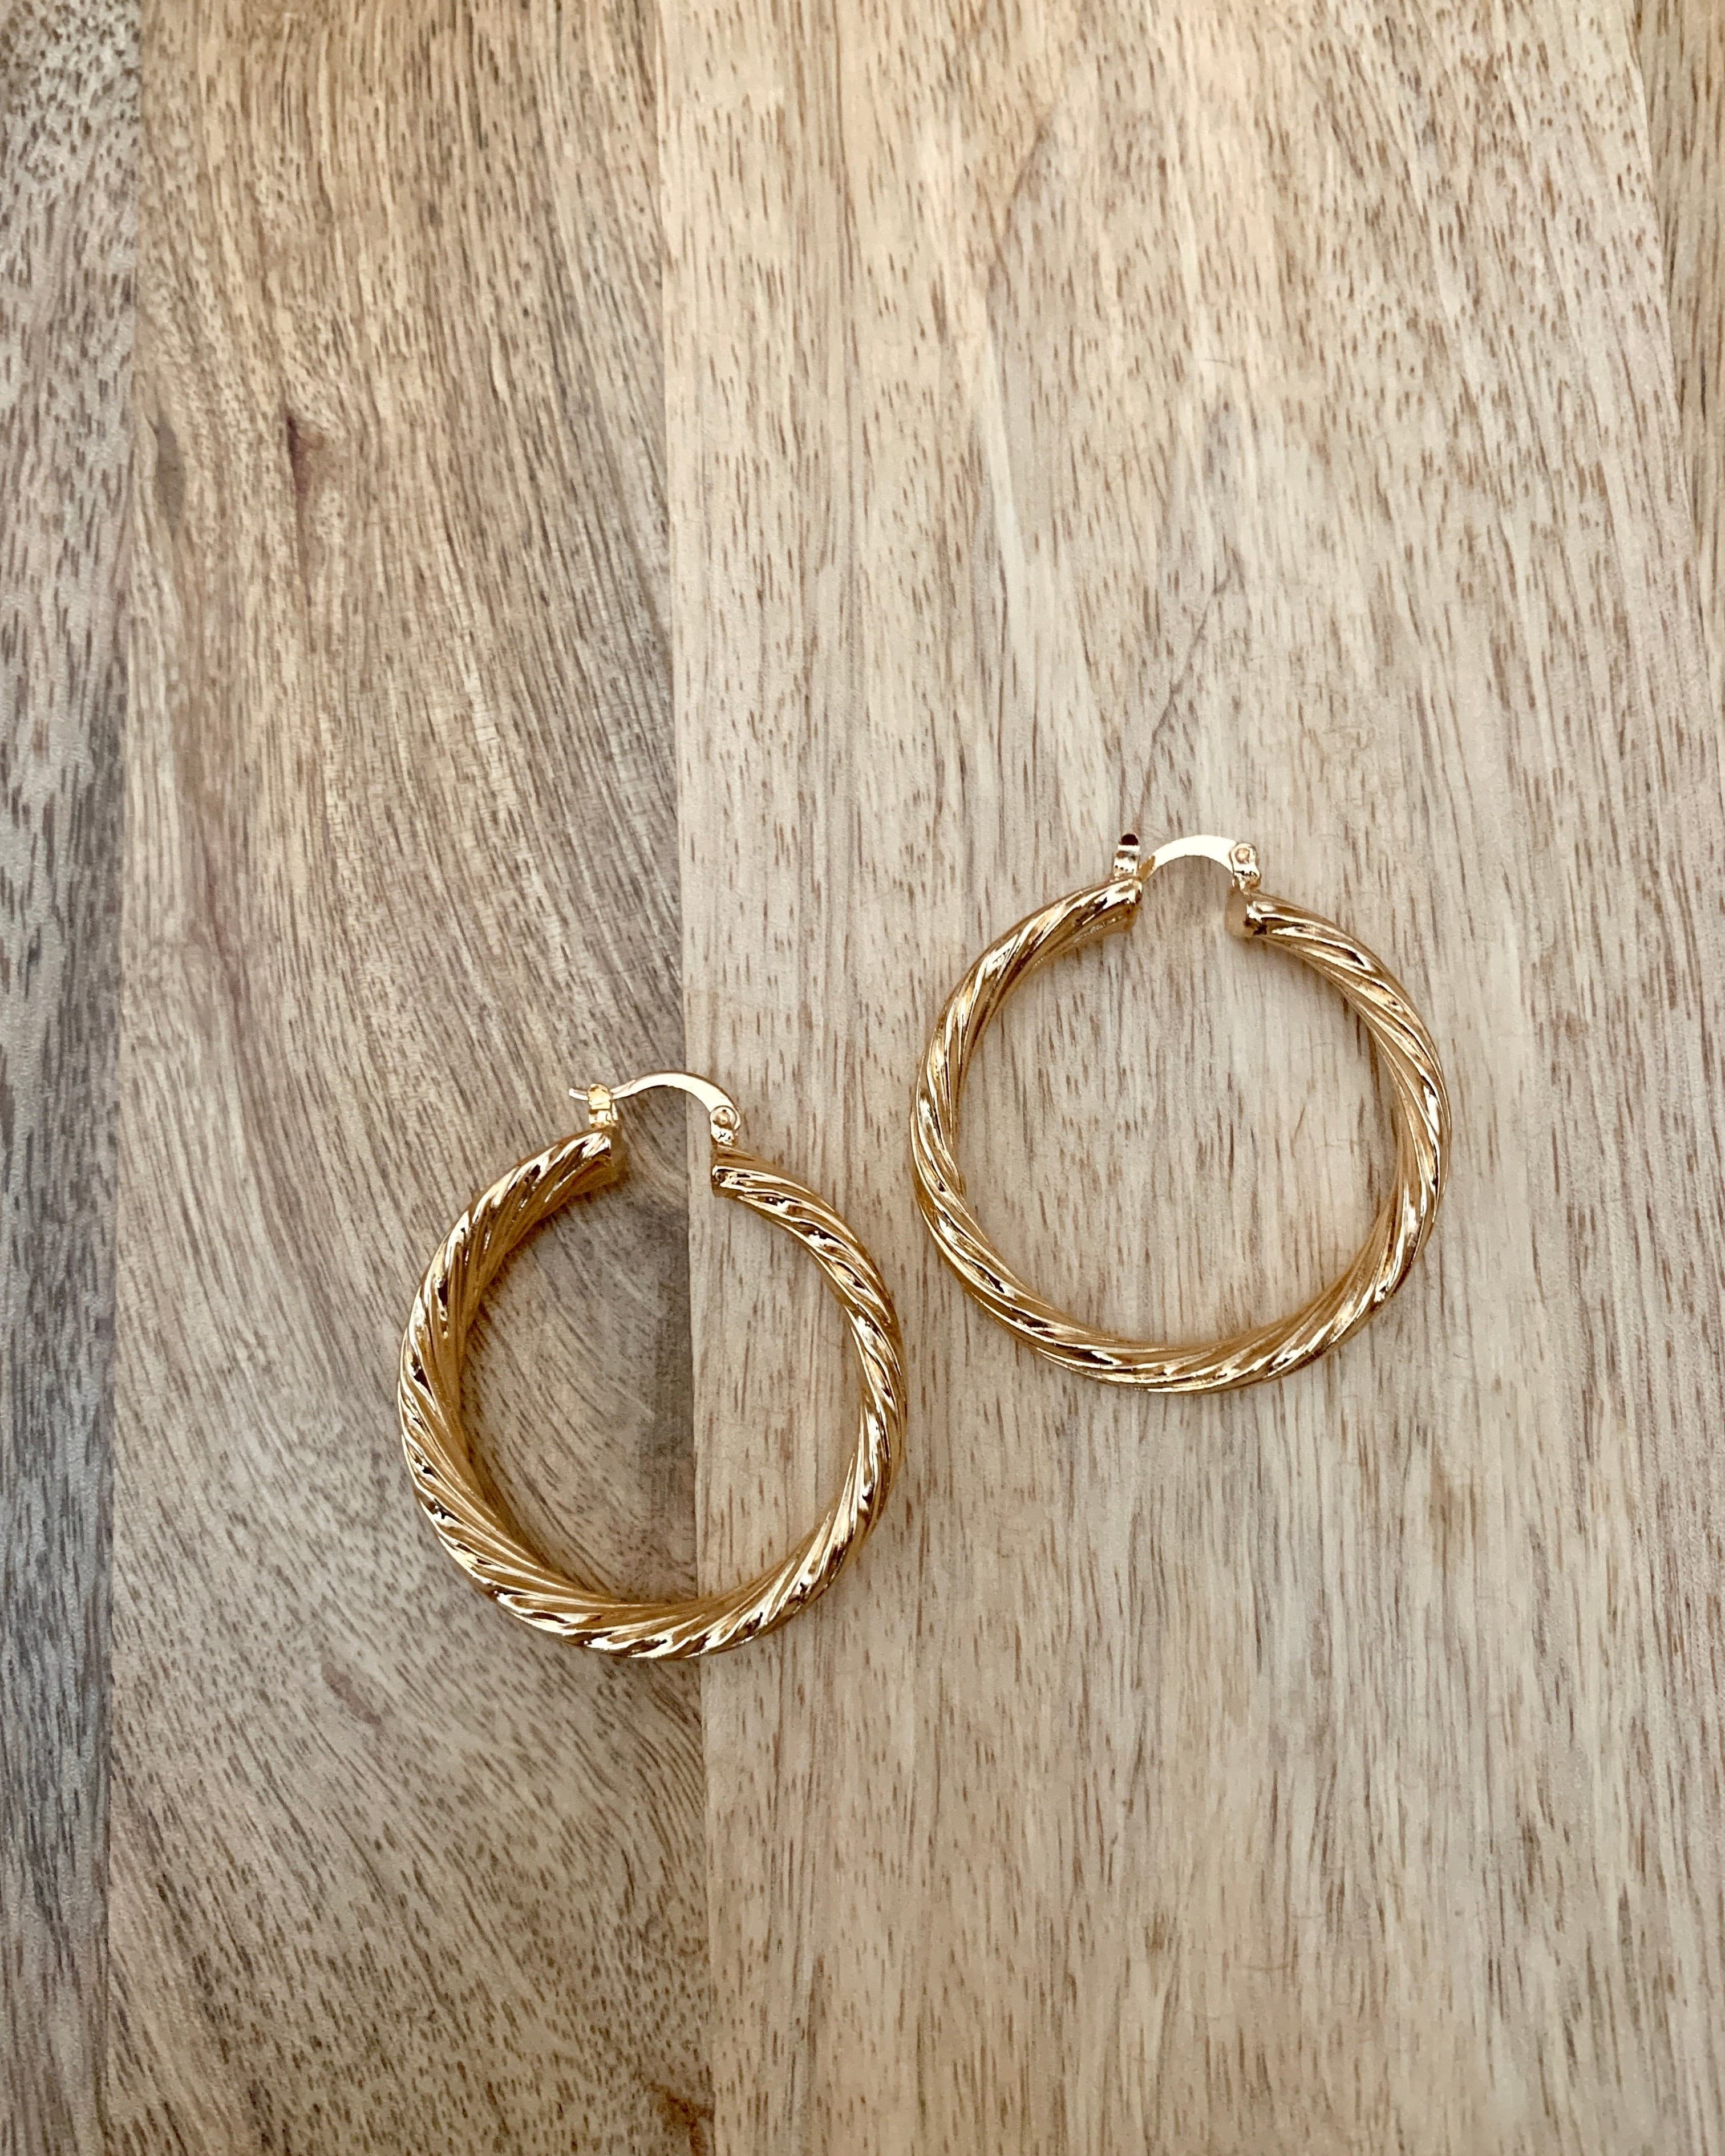 Chunky Gold Hoop Earrings.